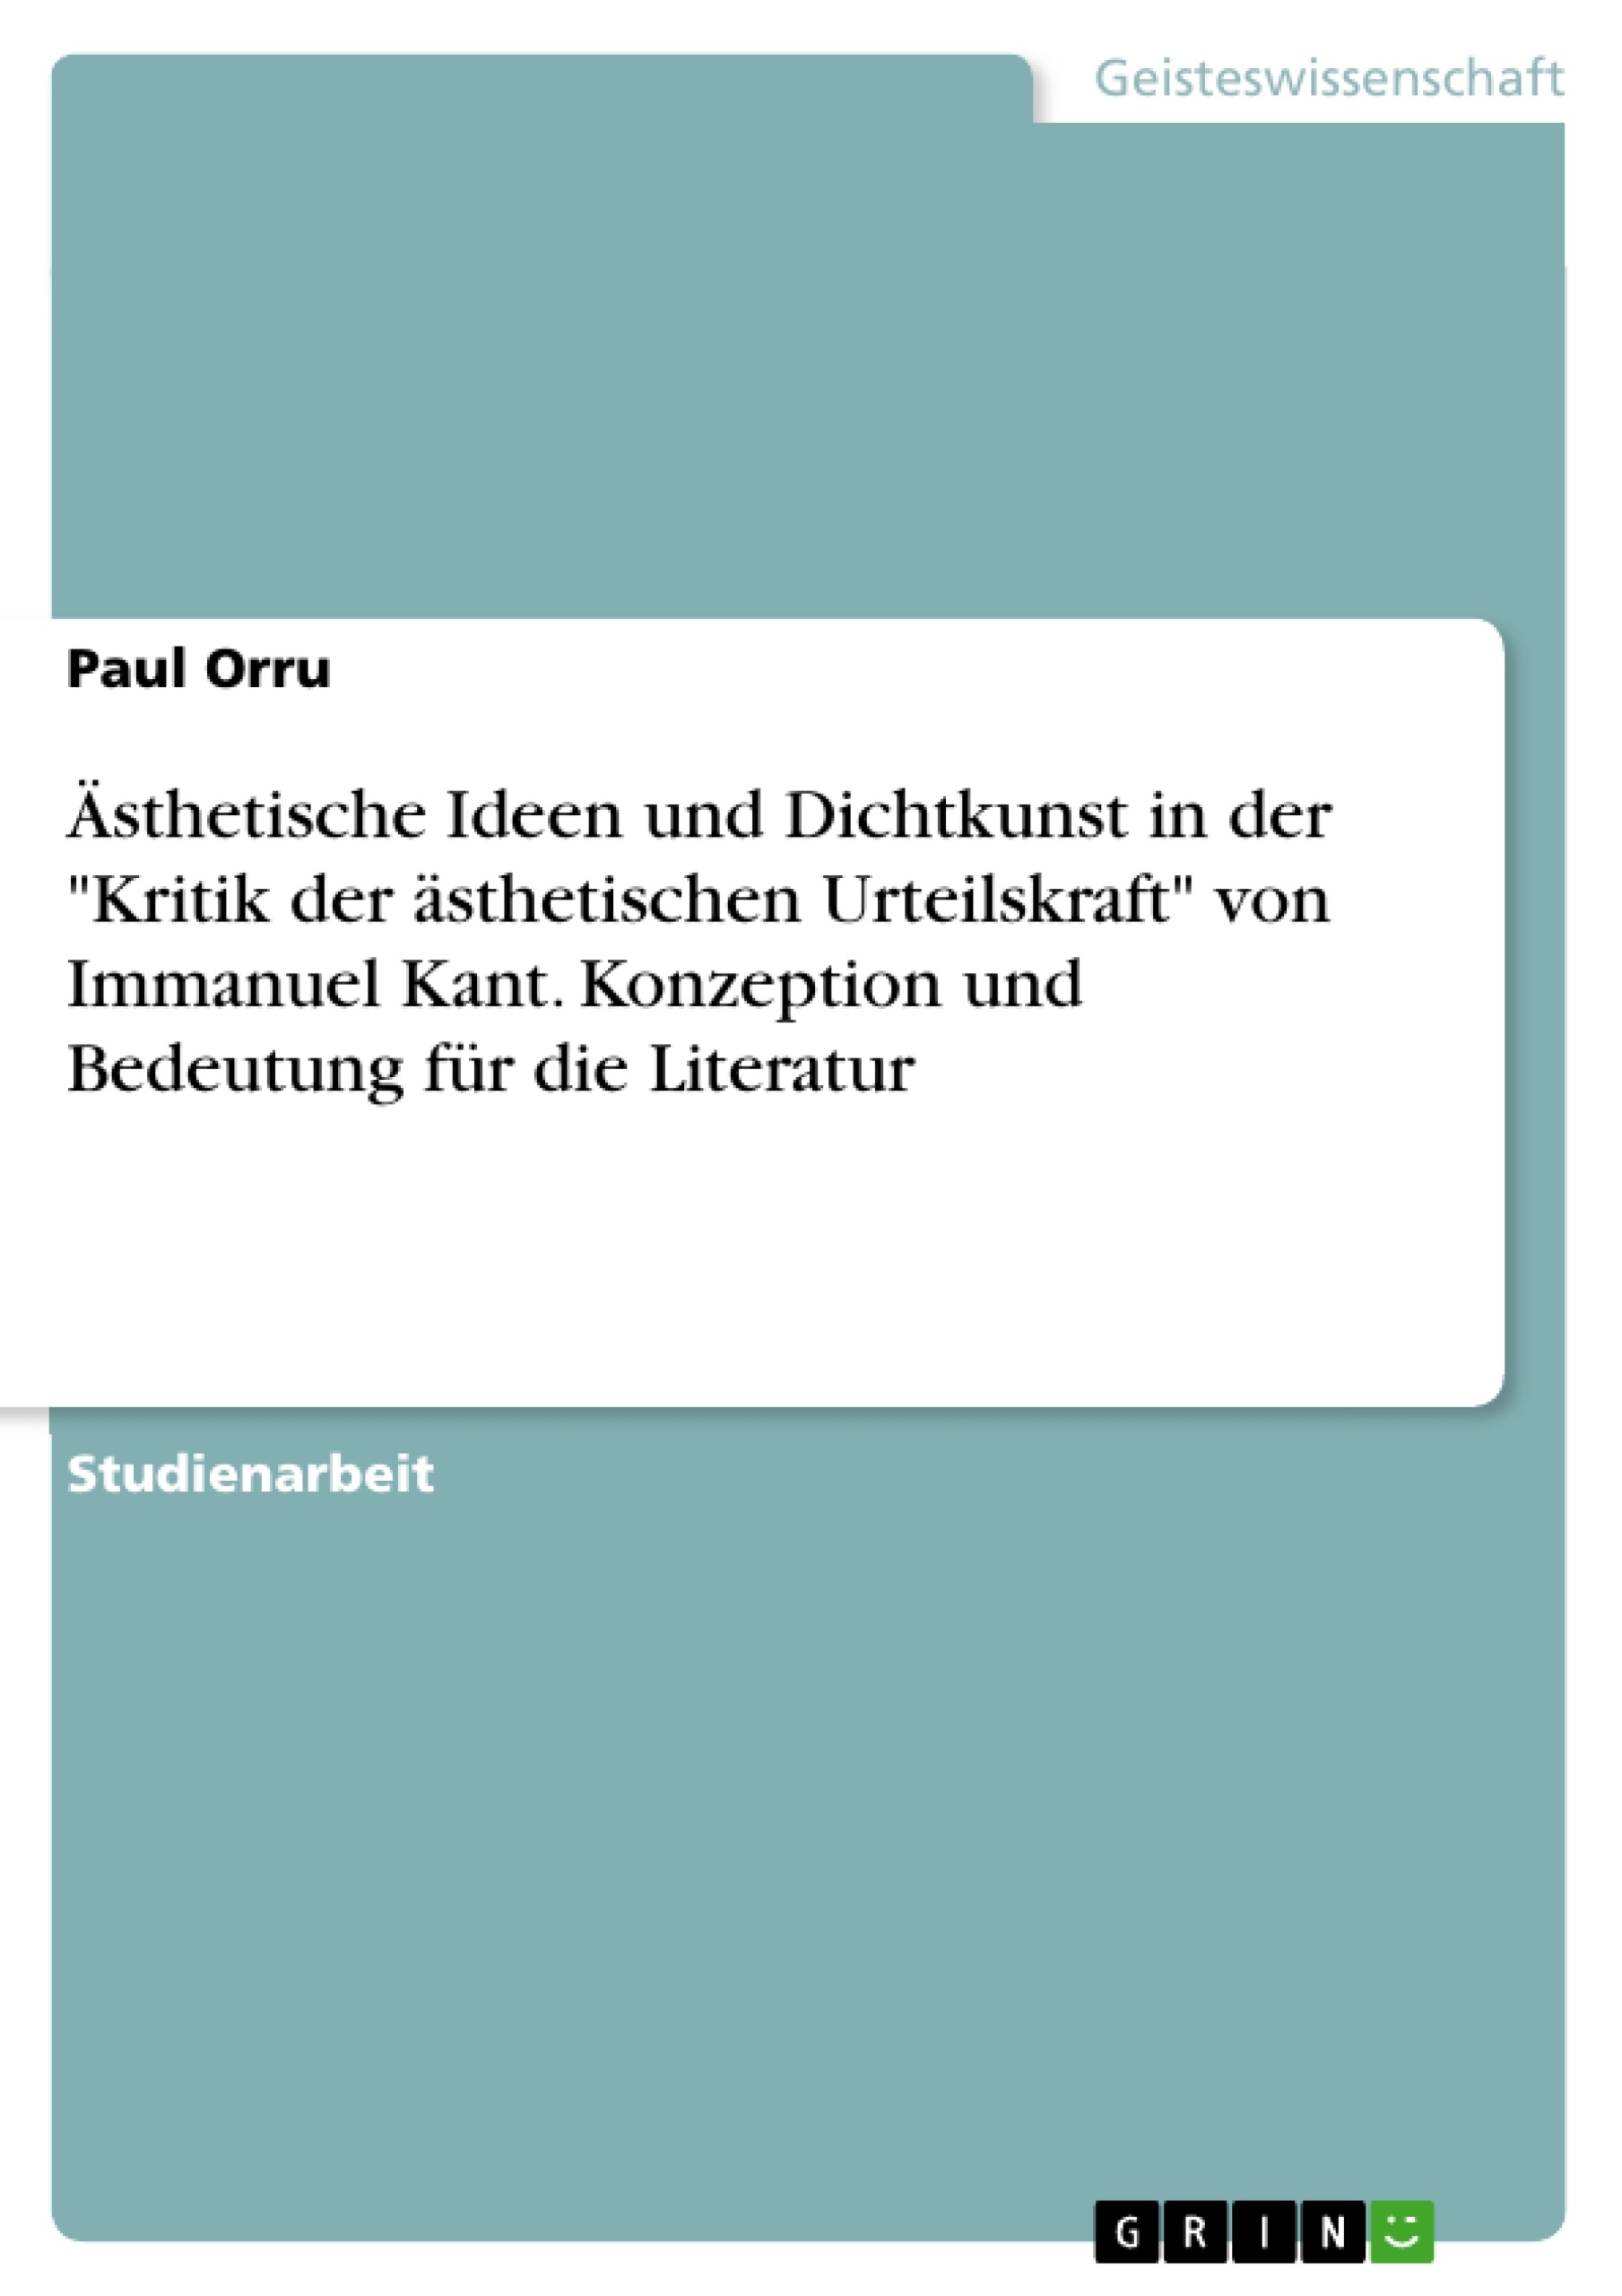 Titel: Ästhetische Ideen und Dichtkunst in der "Kritik der ästhetischen Urteilskraft" von Immanuel Kant. Konzeption und Bedeutung für die Literatur